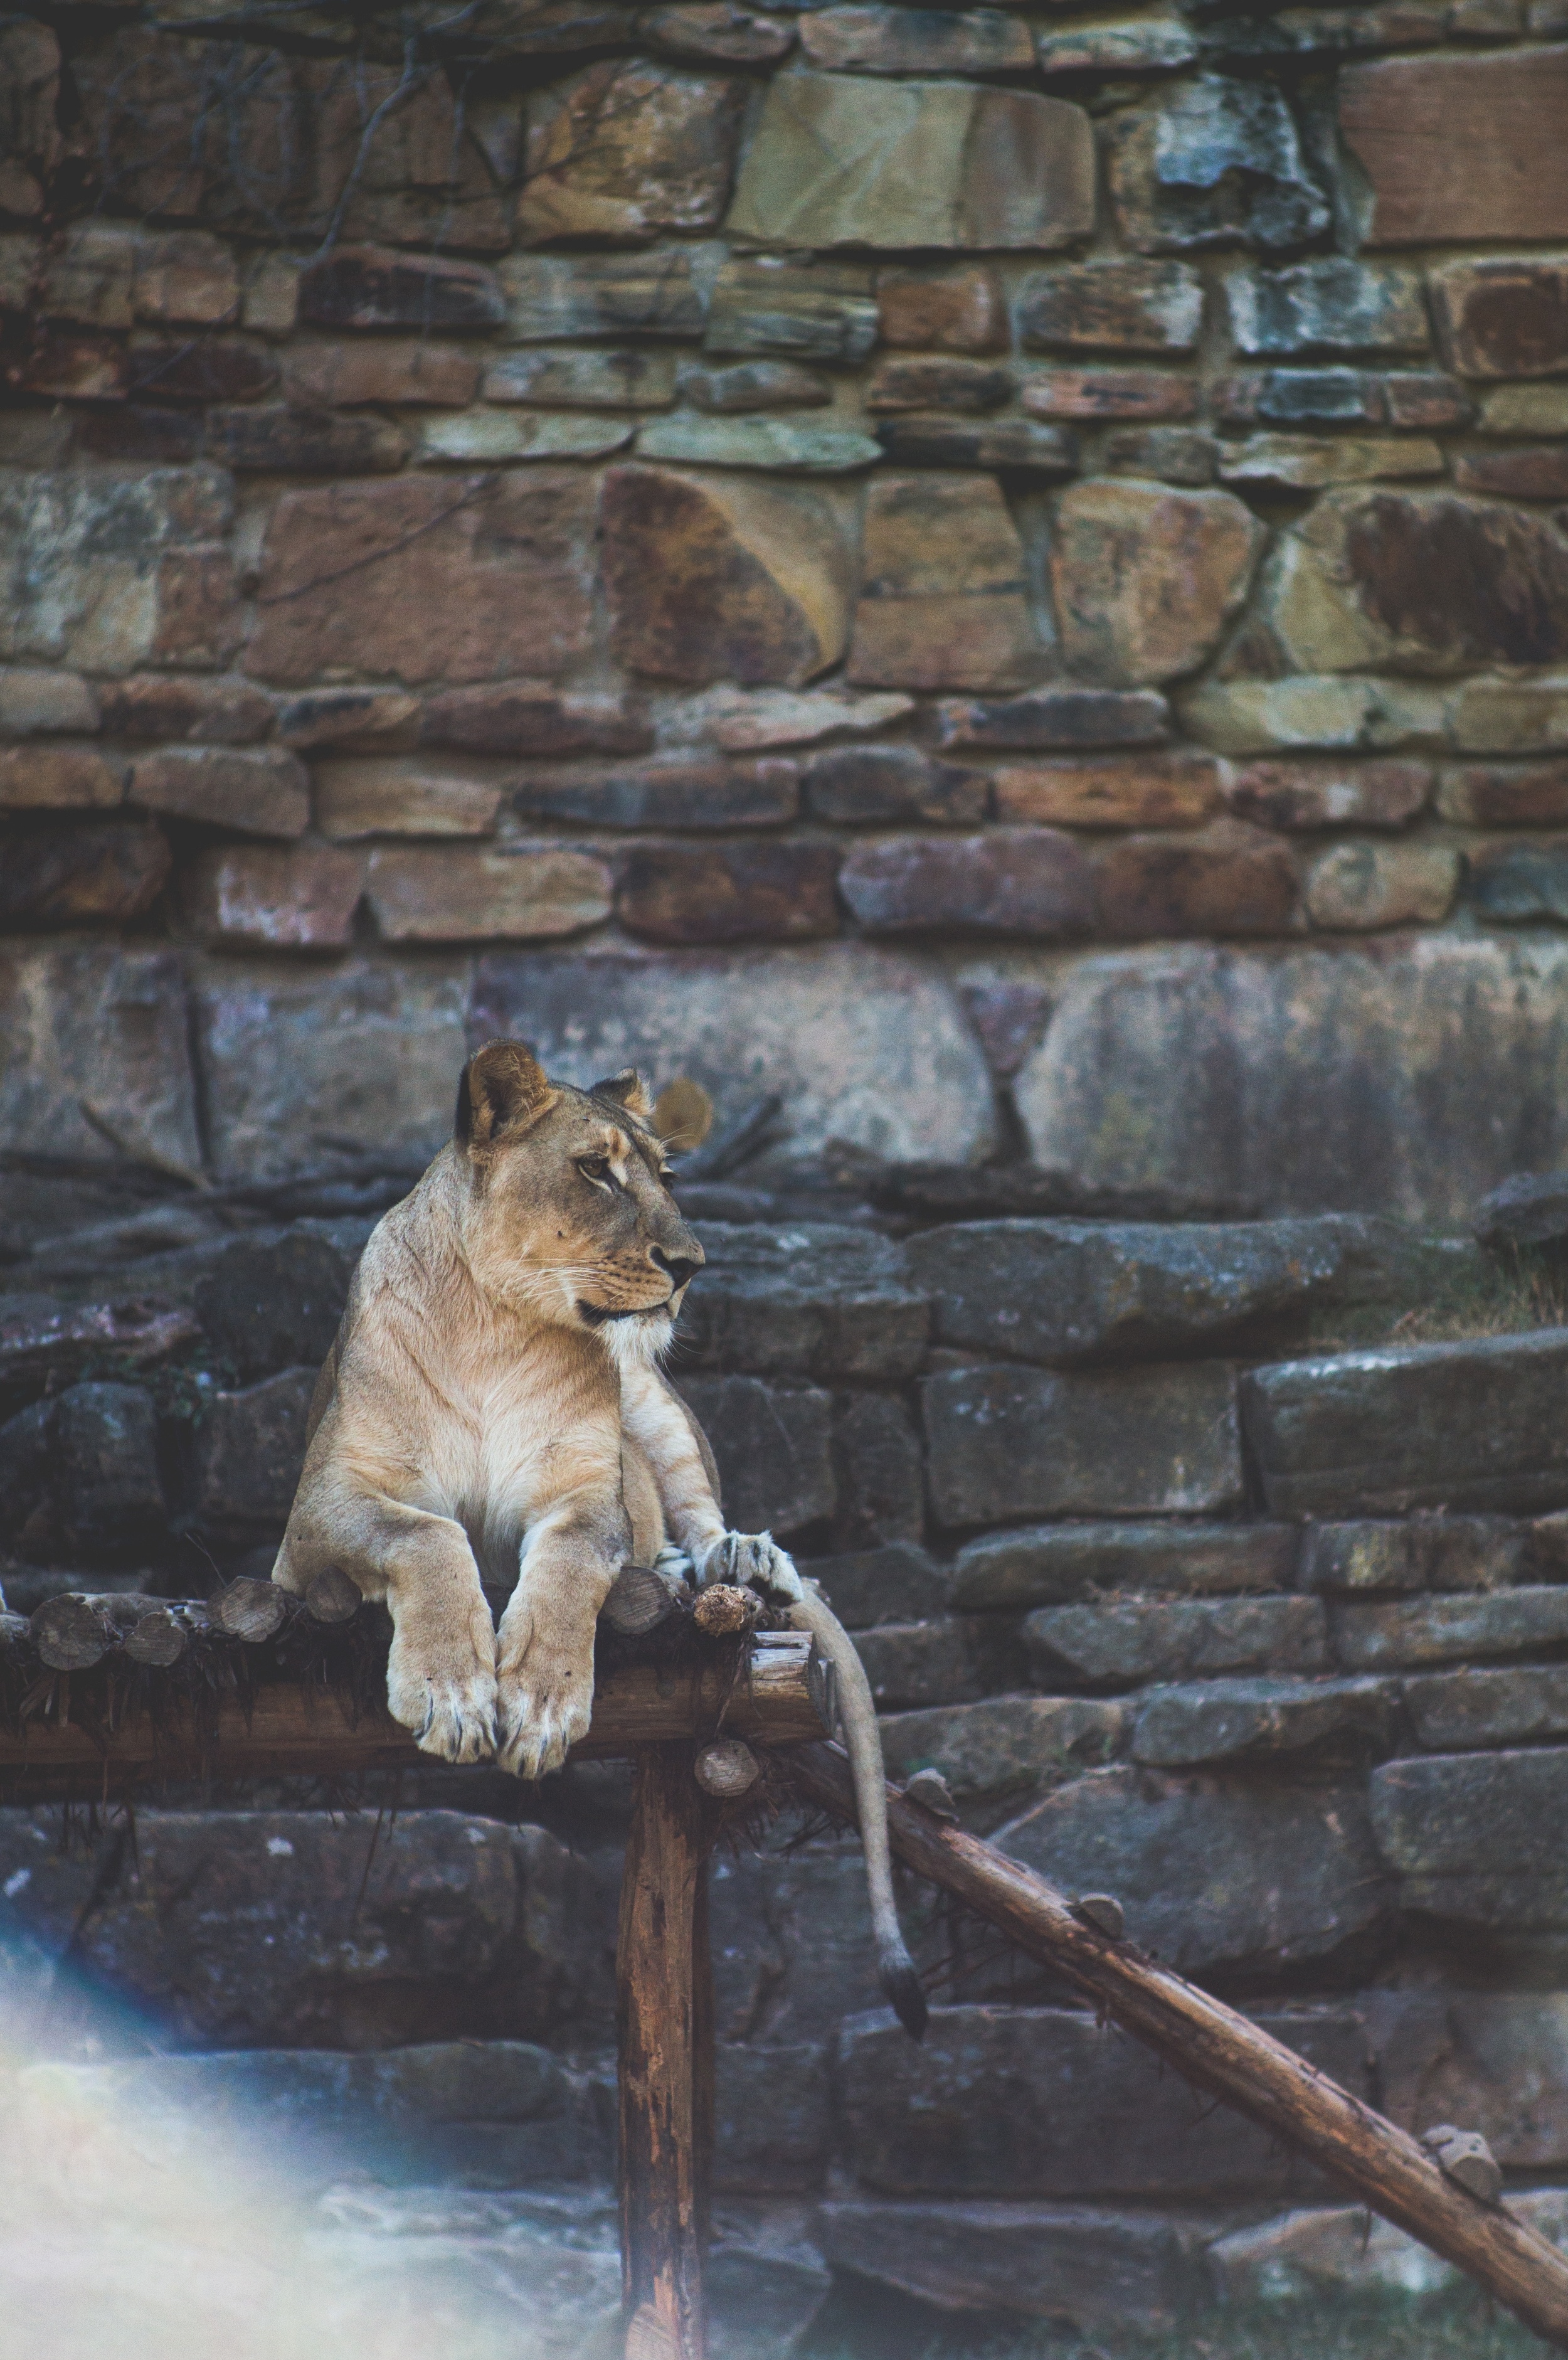 domik lange lion at Fort Worth zoo Up cL.jpeg